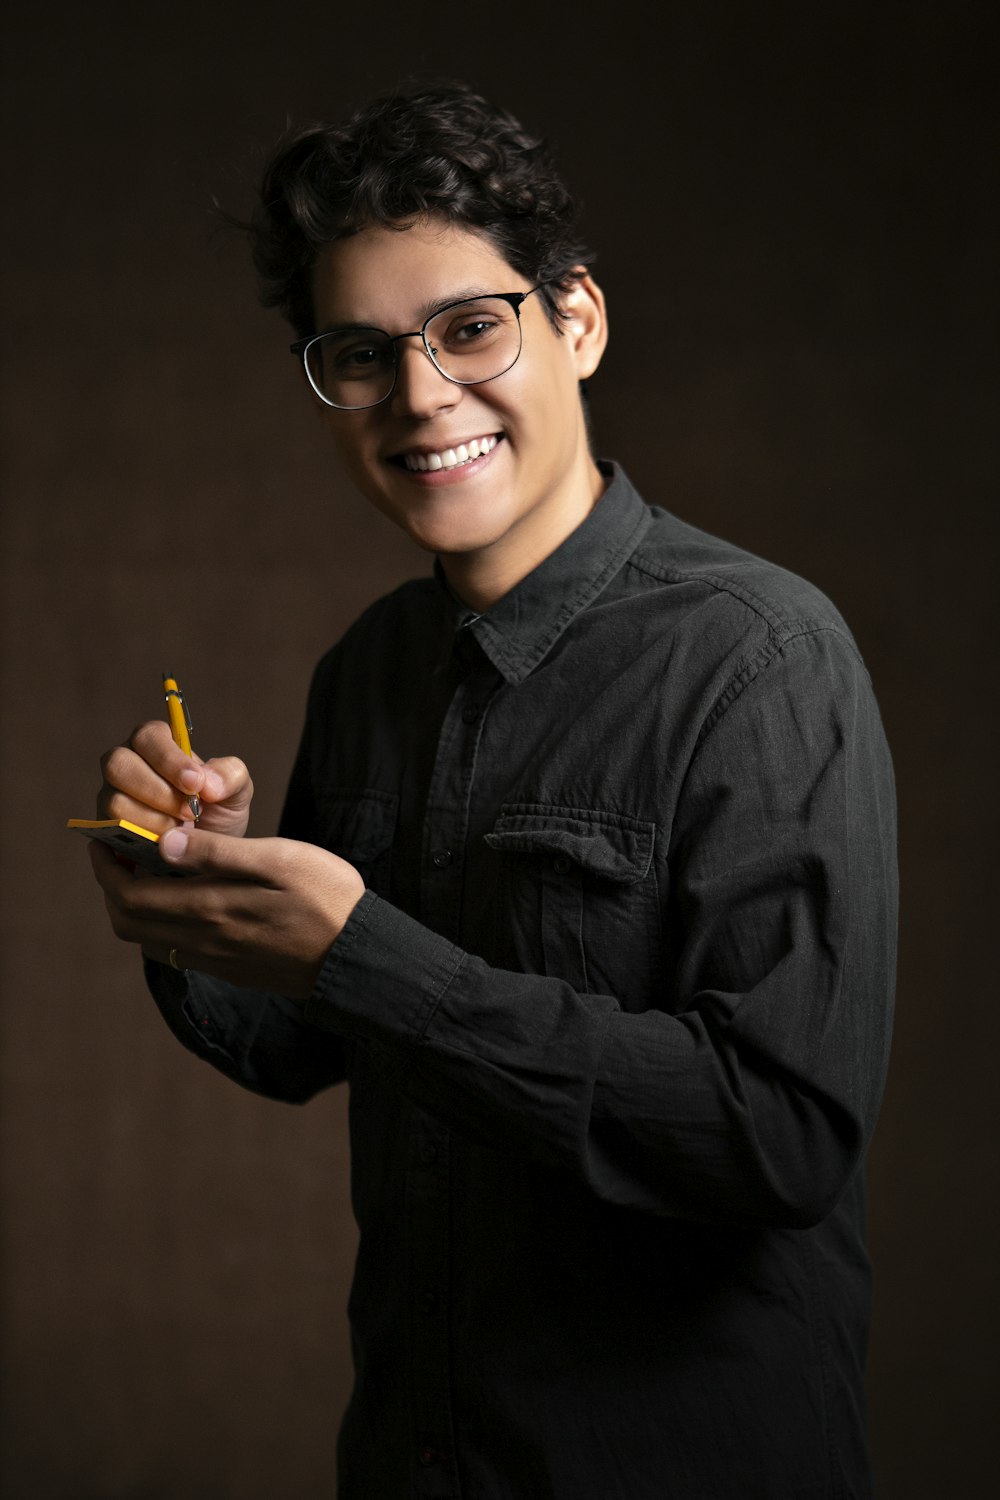 homem sorridente vestindo jaqueta jeans preta segurando lápis e nota adesiva enquanto está em pé